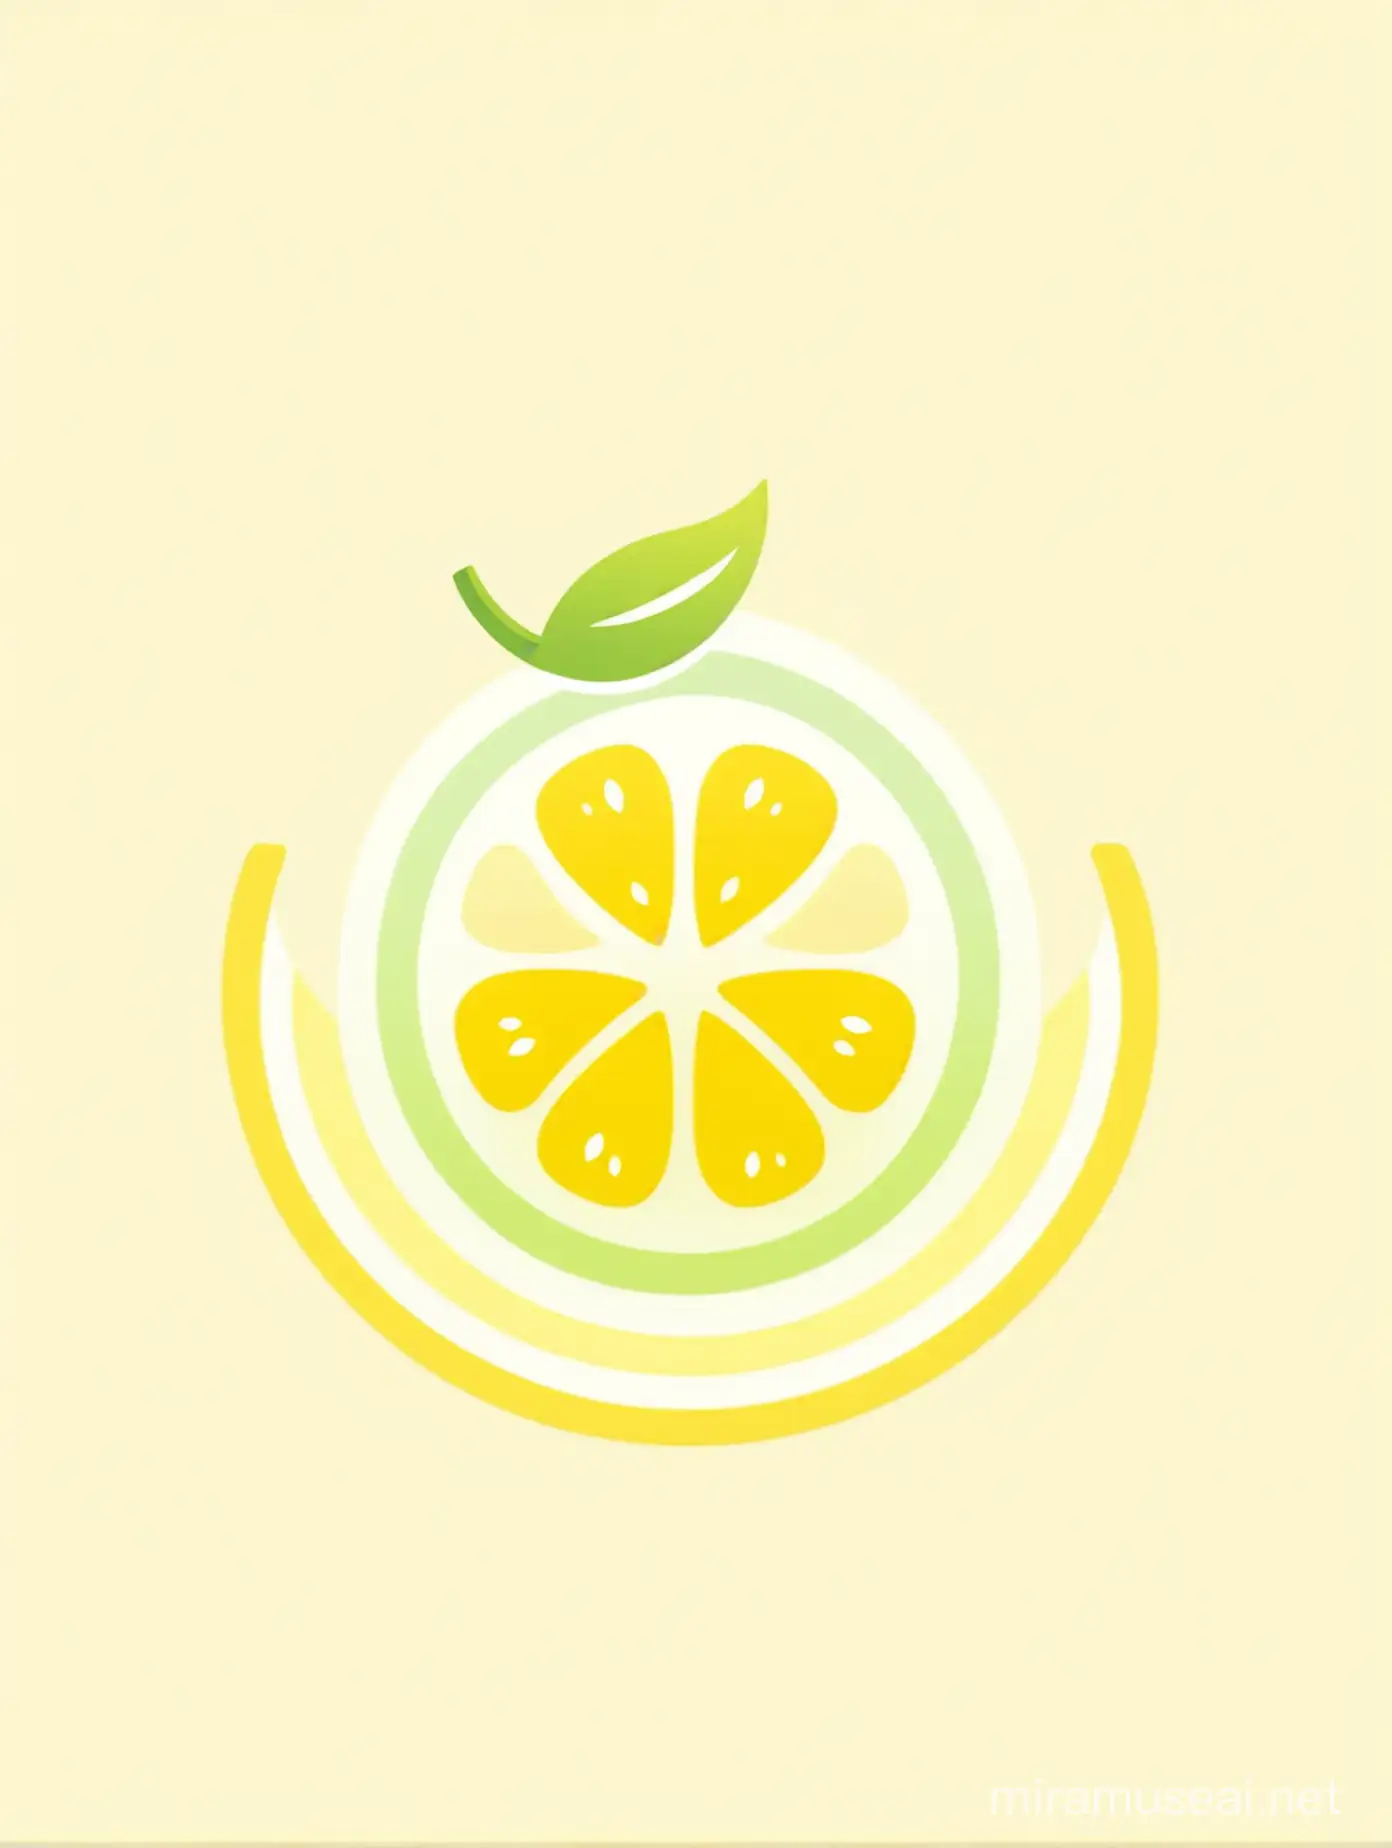 Pastel Lemon Logo on White Background for Wellness App